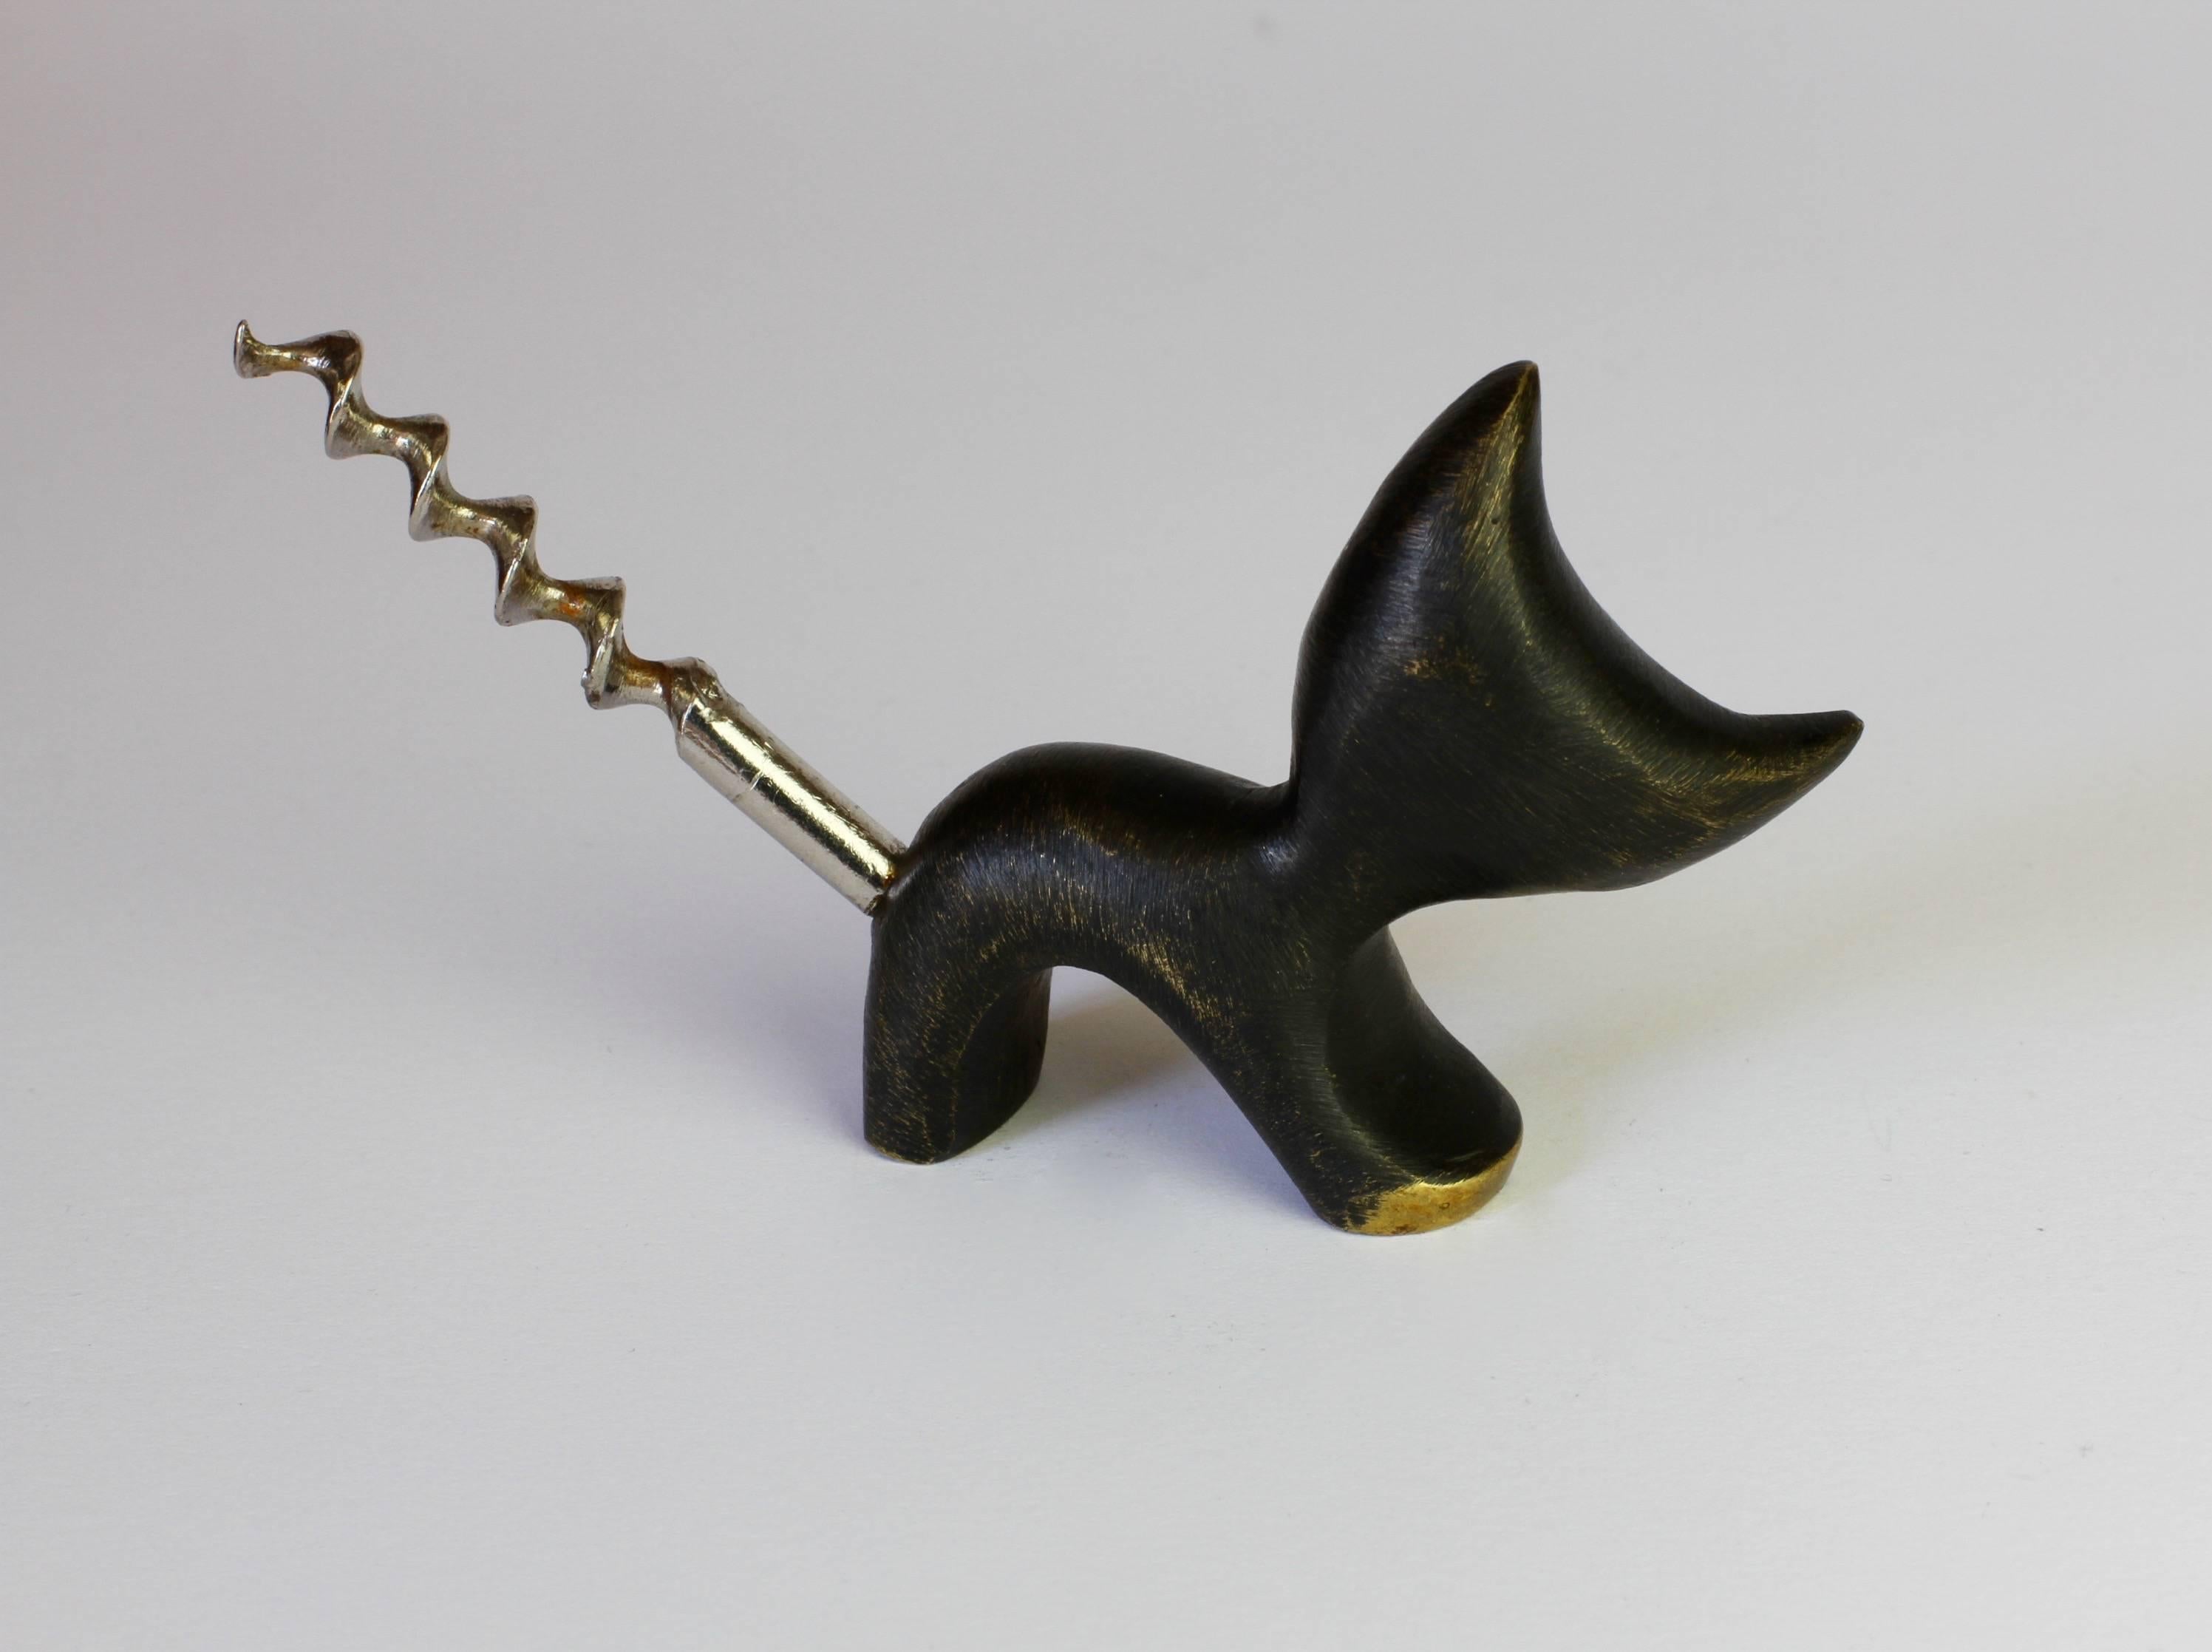 Mid-Century Modern Whimsical Brass Cat Corkscrew by Walter Bosse for Hertha Baller, circa 1950s